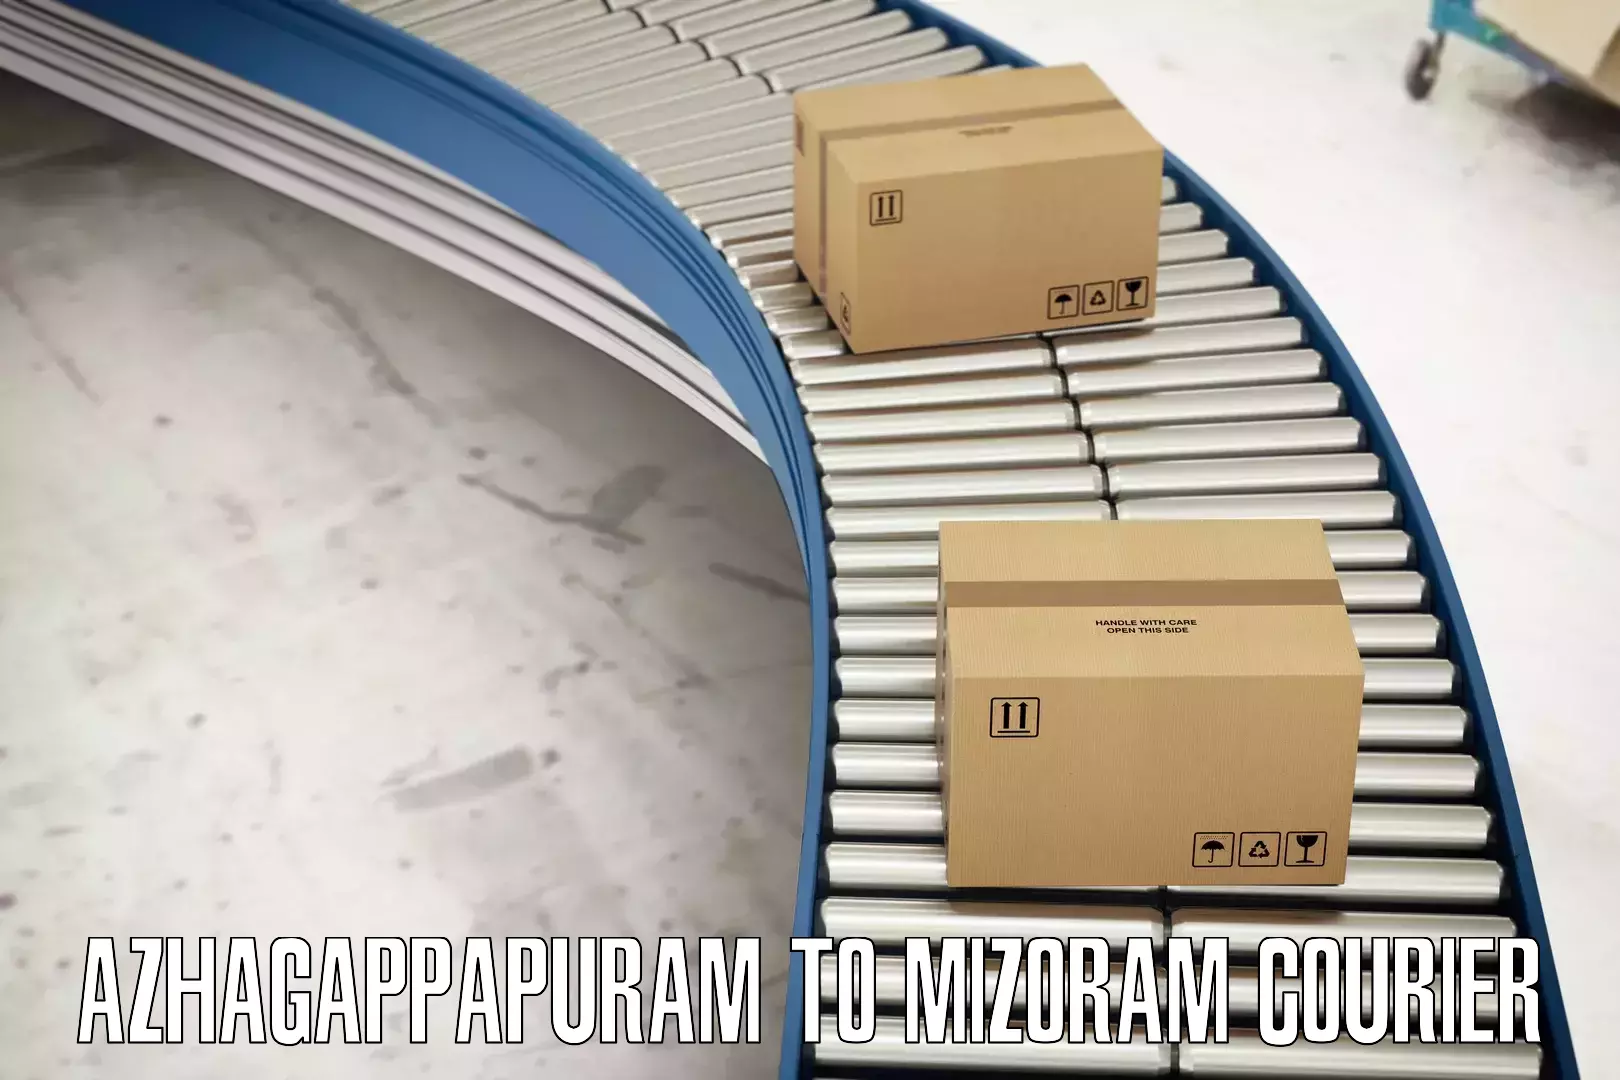 Smart parcel delivery Azhagappapuram to Khawzawl